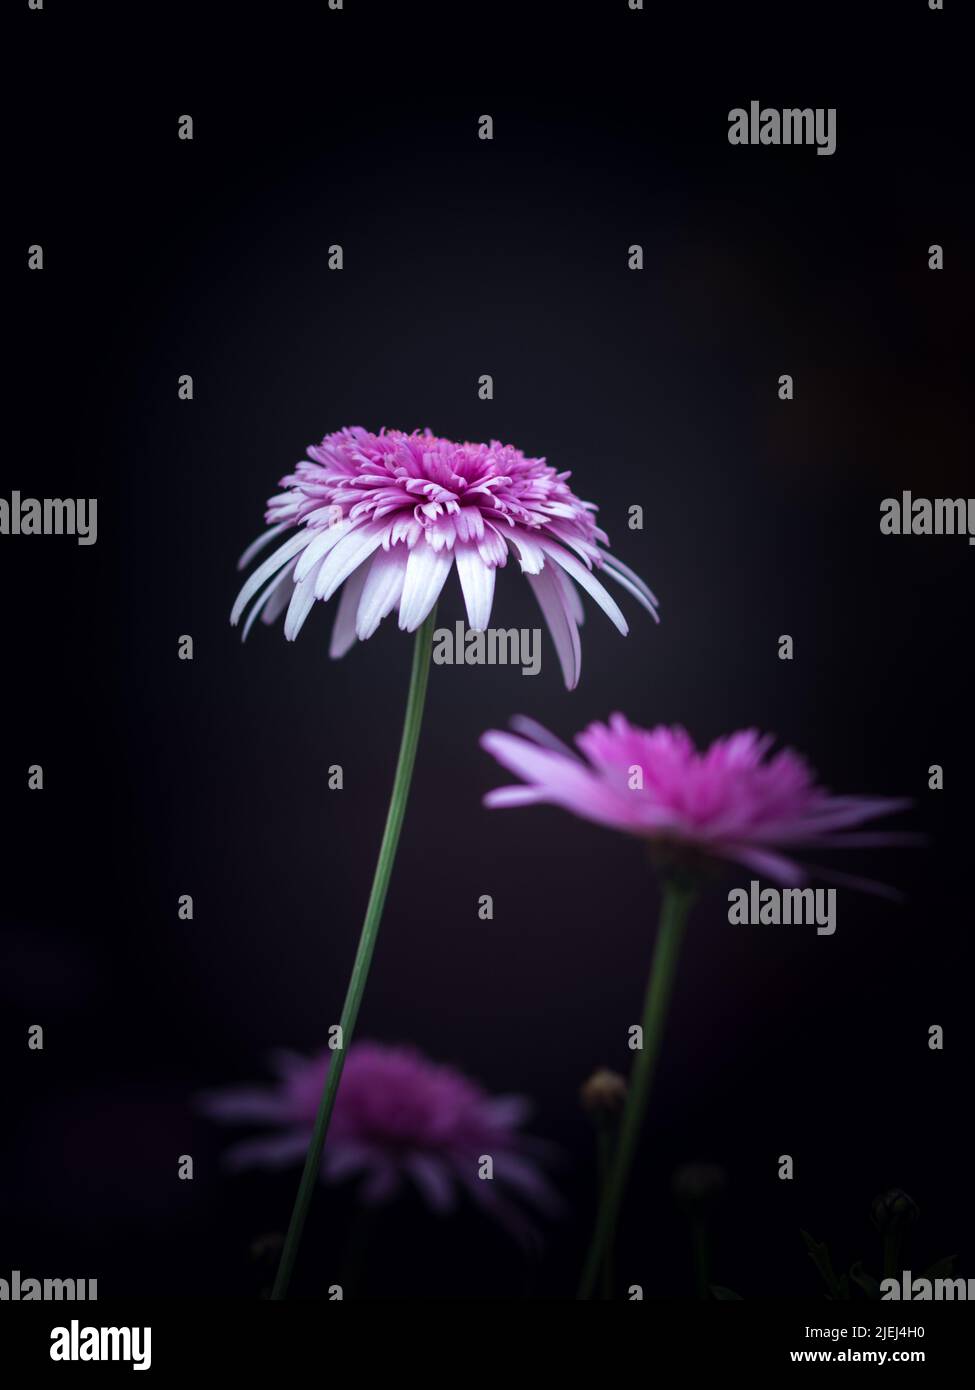 Leuchtend rosa chinesische Aster Blumen auf schwarzem Hintergrund mit selektivem Fokus. Blumenfotografie in stimmungsvollen Tönen mit leerem Textraum Stockfoto